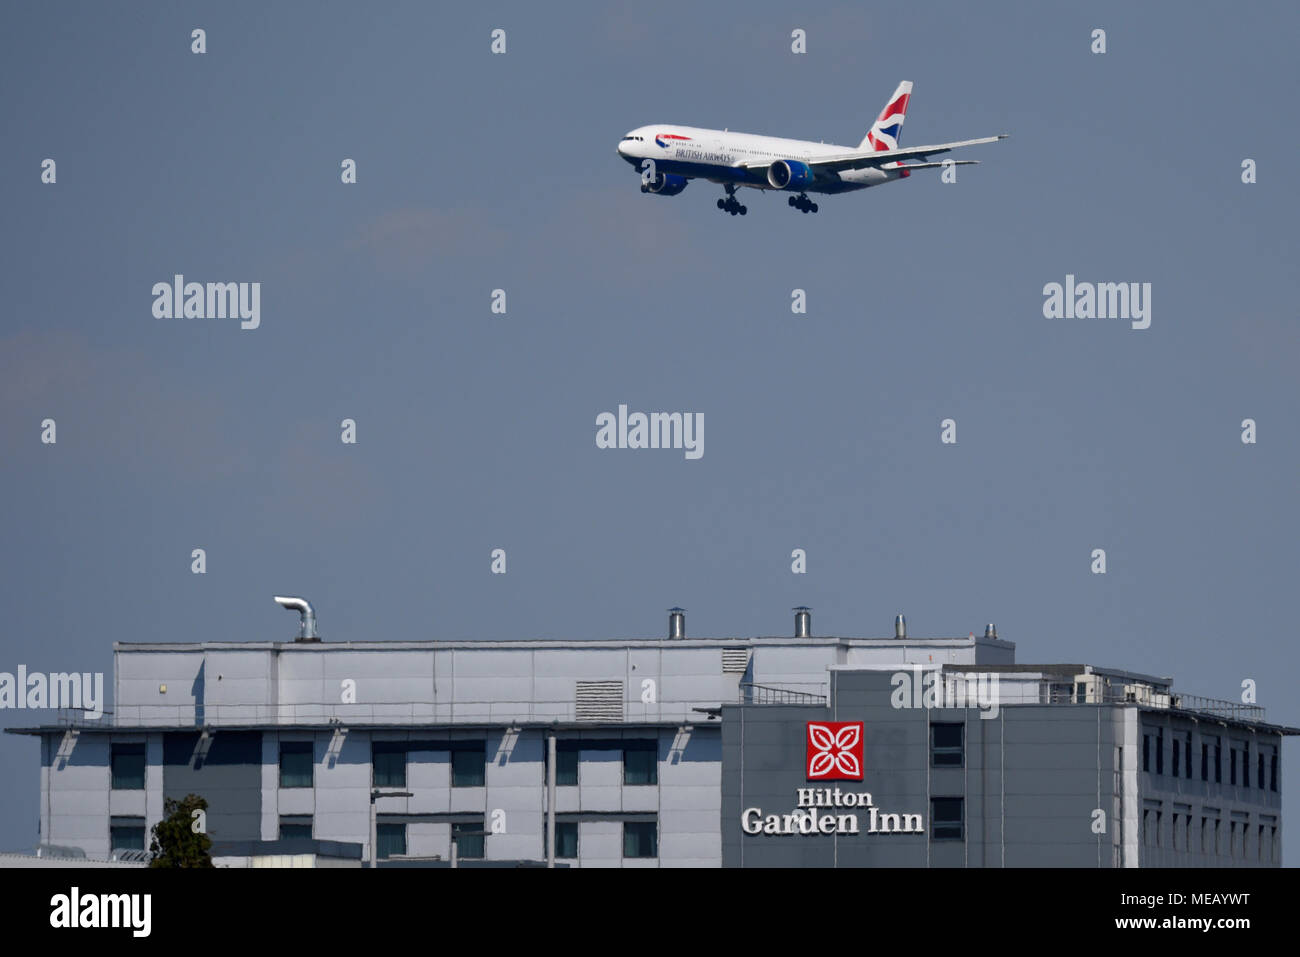 British Airways Boeing 777 Jet Flugzeug über dem Hilton Garden Inn Hotel bei der Landung am London Heathrow Airport, Großbritannien Stockfoto